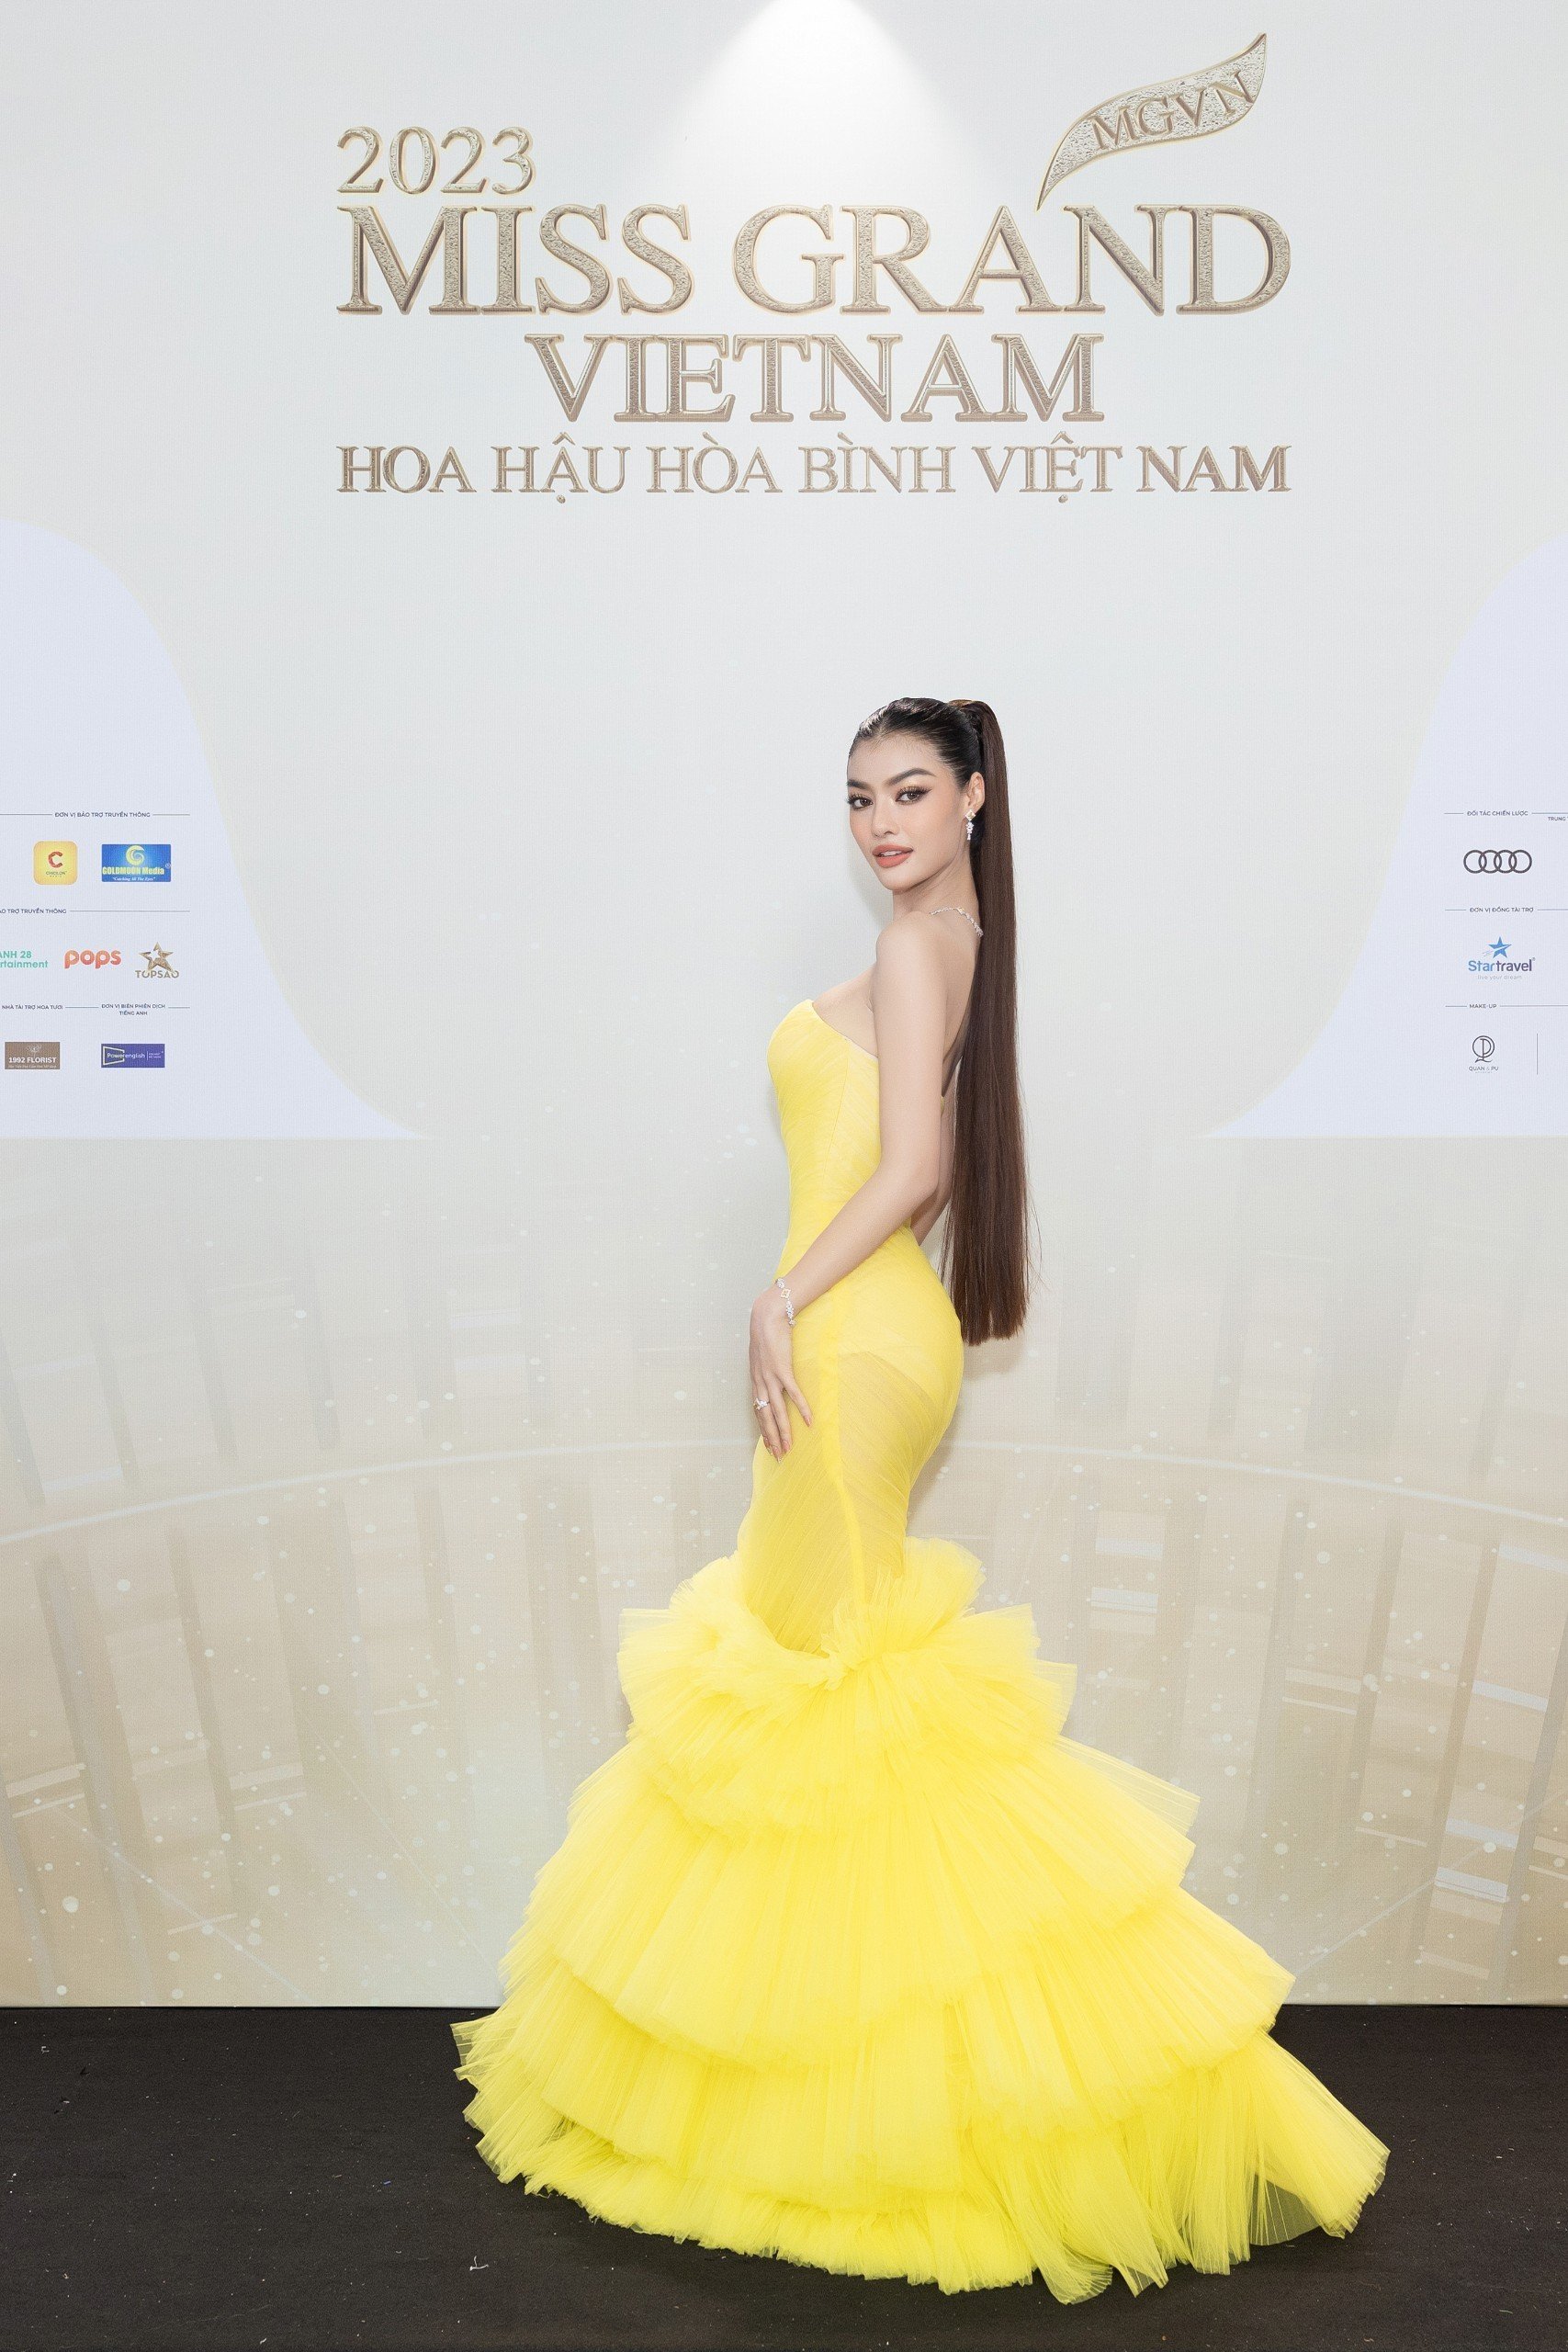 Á hậu 1 Miss World Vietnam 2019 Lona Kiều Loan xuất hiện quyến rũ trong chiếc đầm xòe đuôi cá.